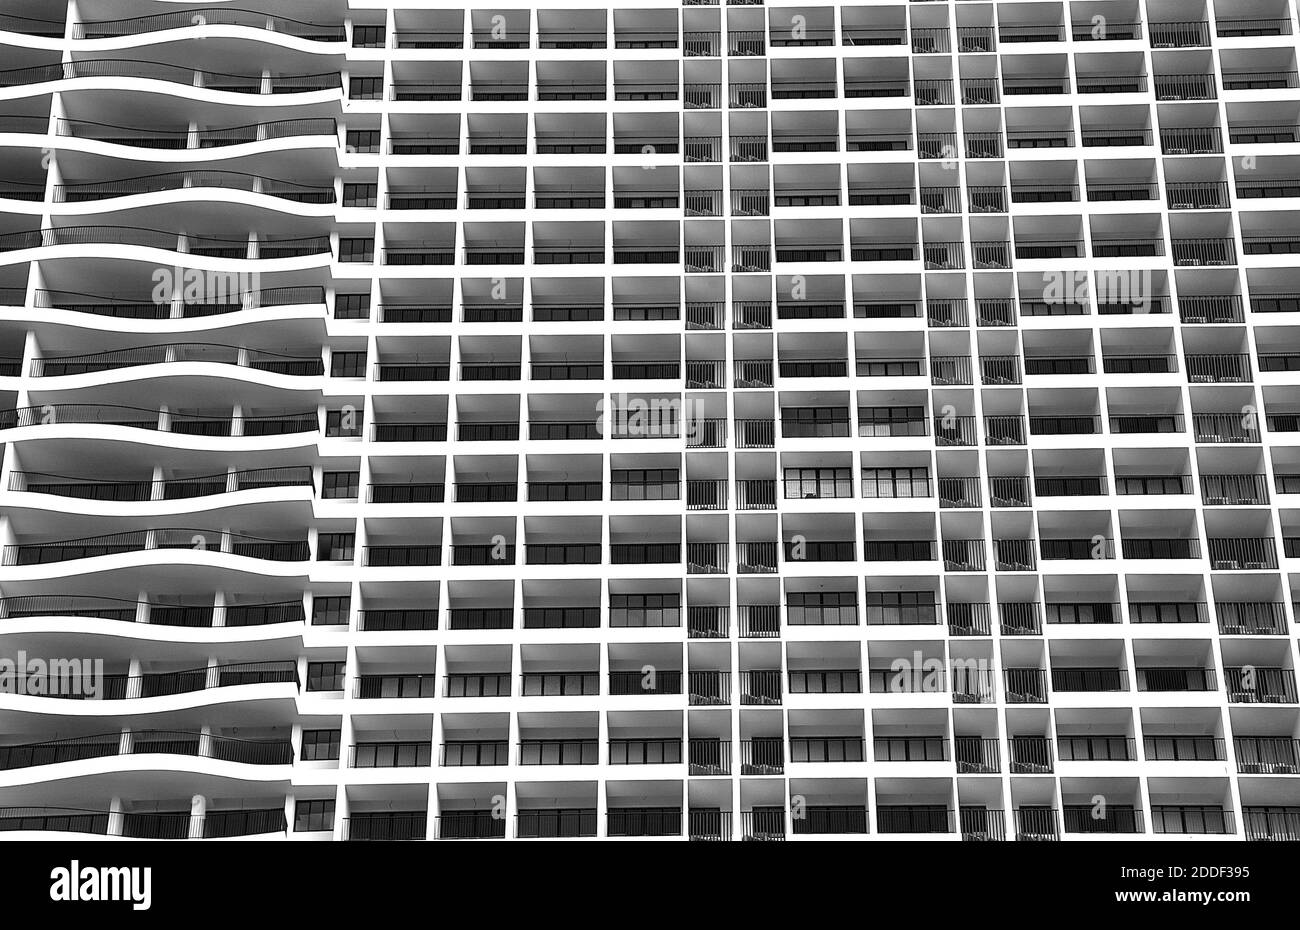 Moderno e contemporaneo edificio di appartamenti con linee curve a contrasto e rettilinee orizzontali. Foto Stock